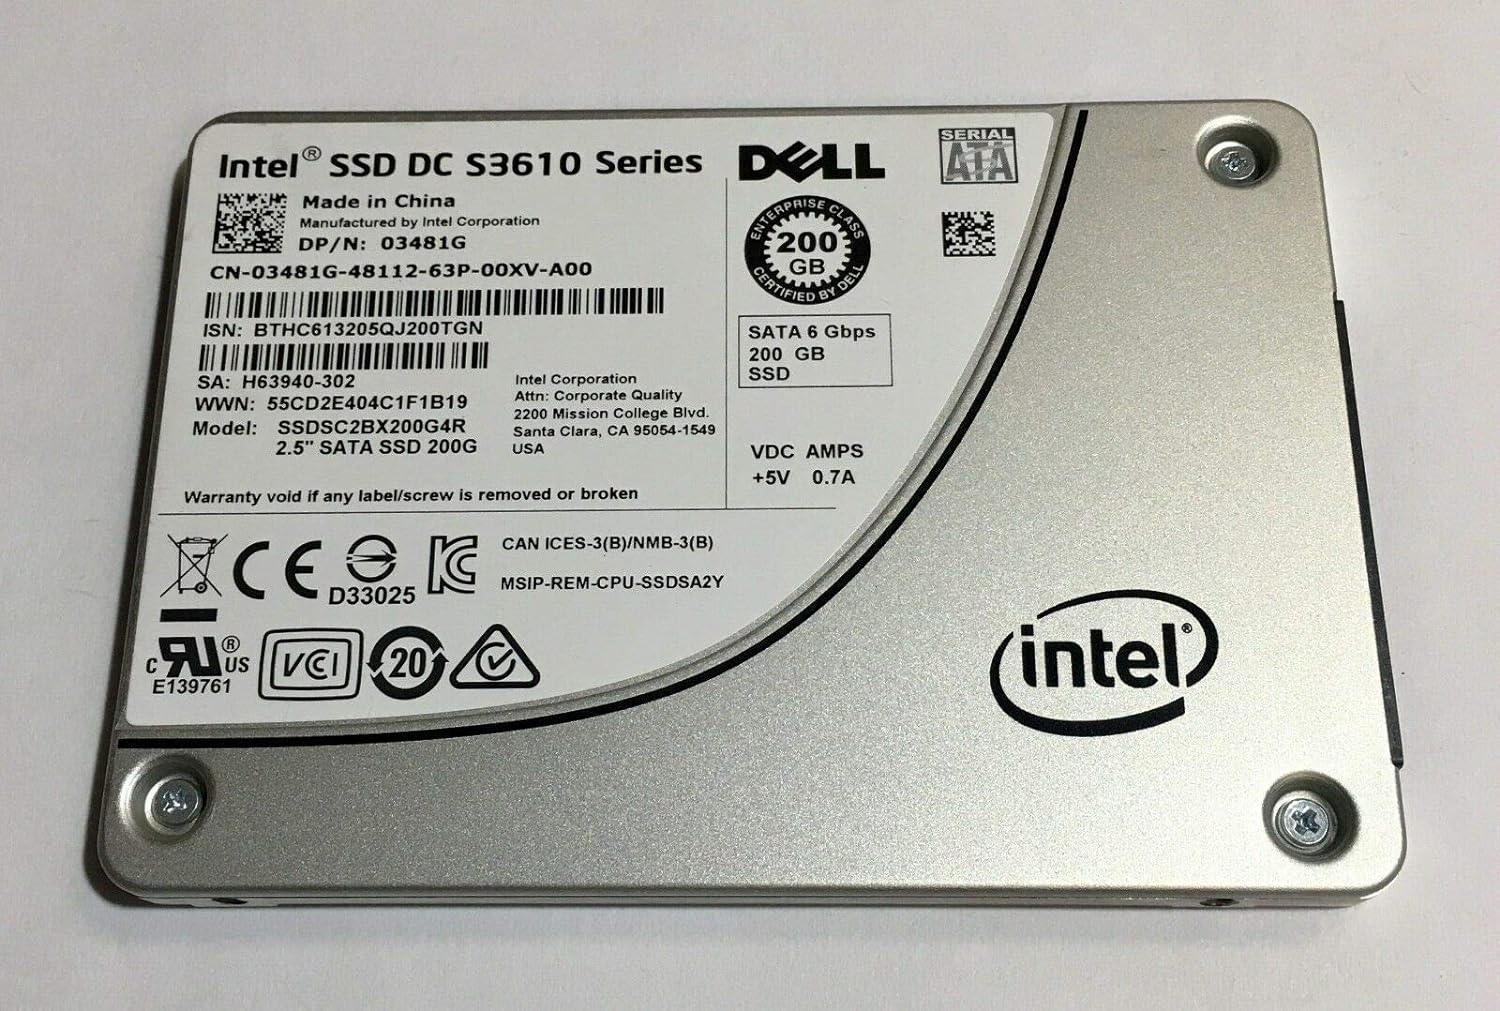 Intel 200GB SSD 2.5 6Gb/s SATA Solid State Drive Model: SSDSC2BX200G4R DP/N: 3481G